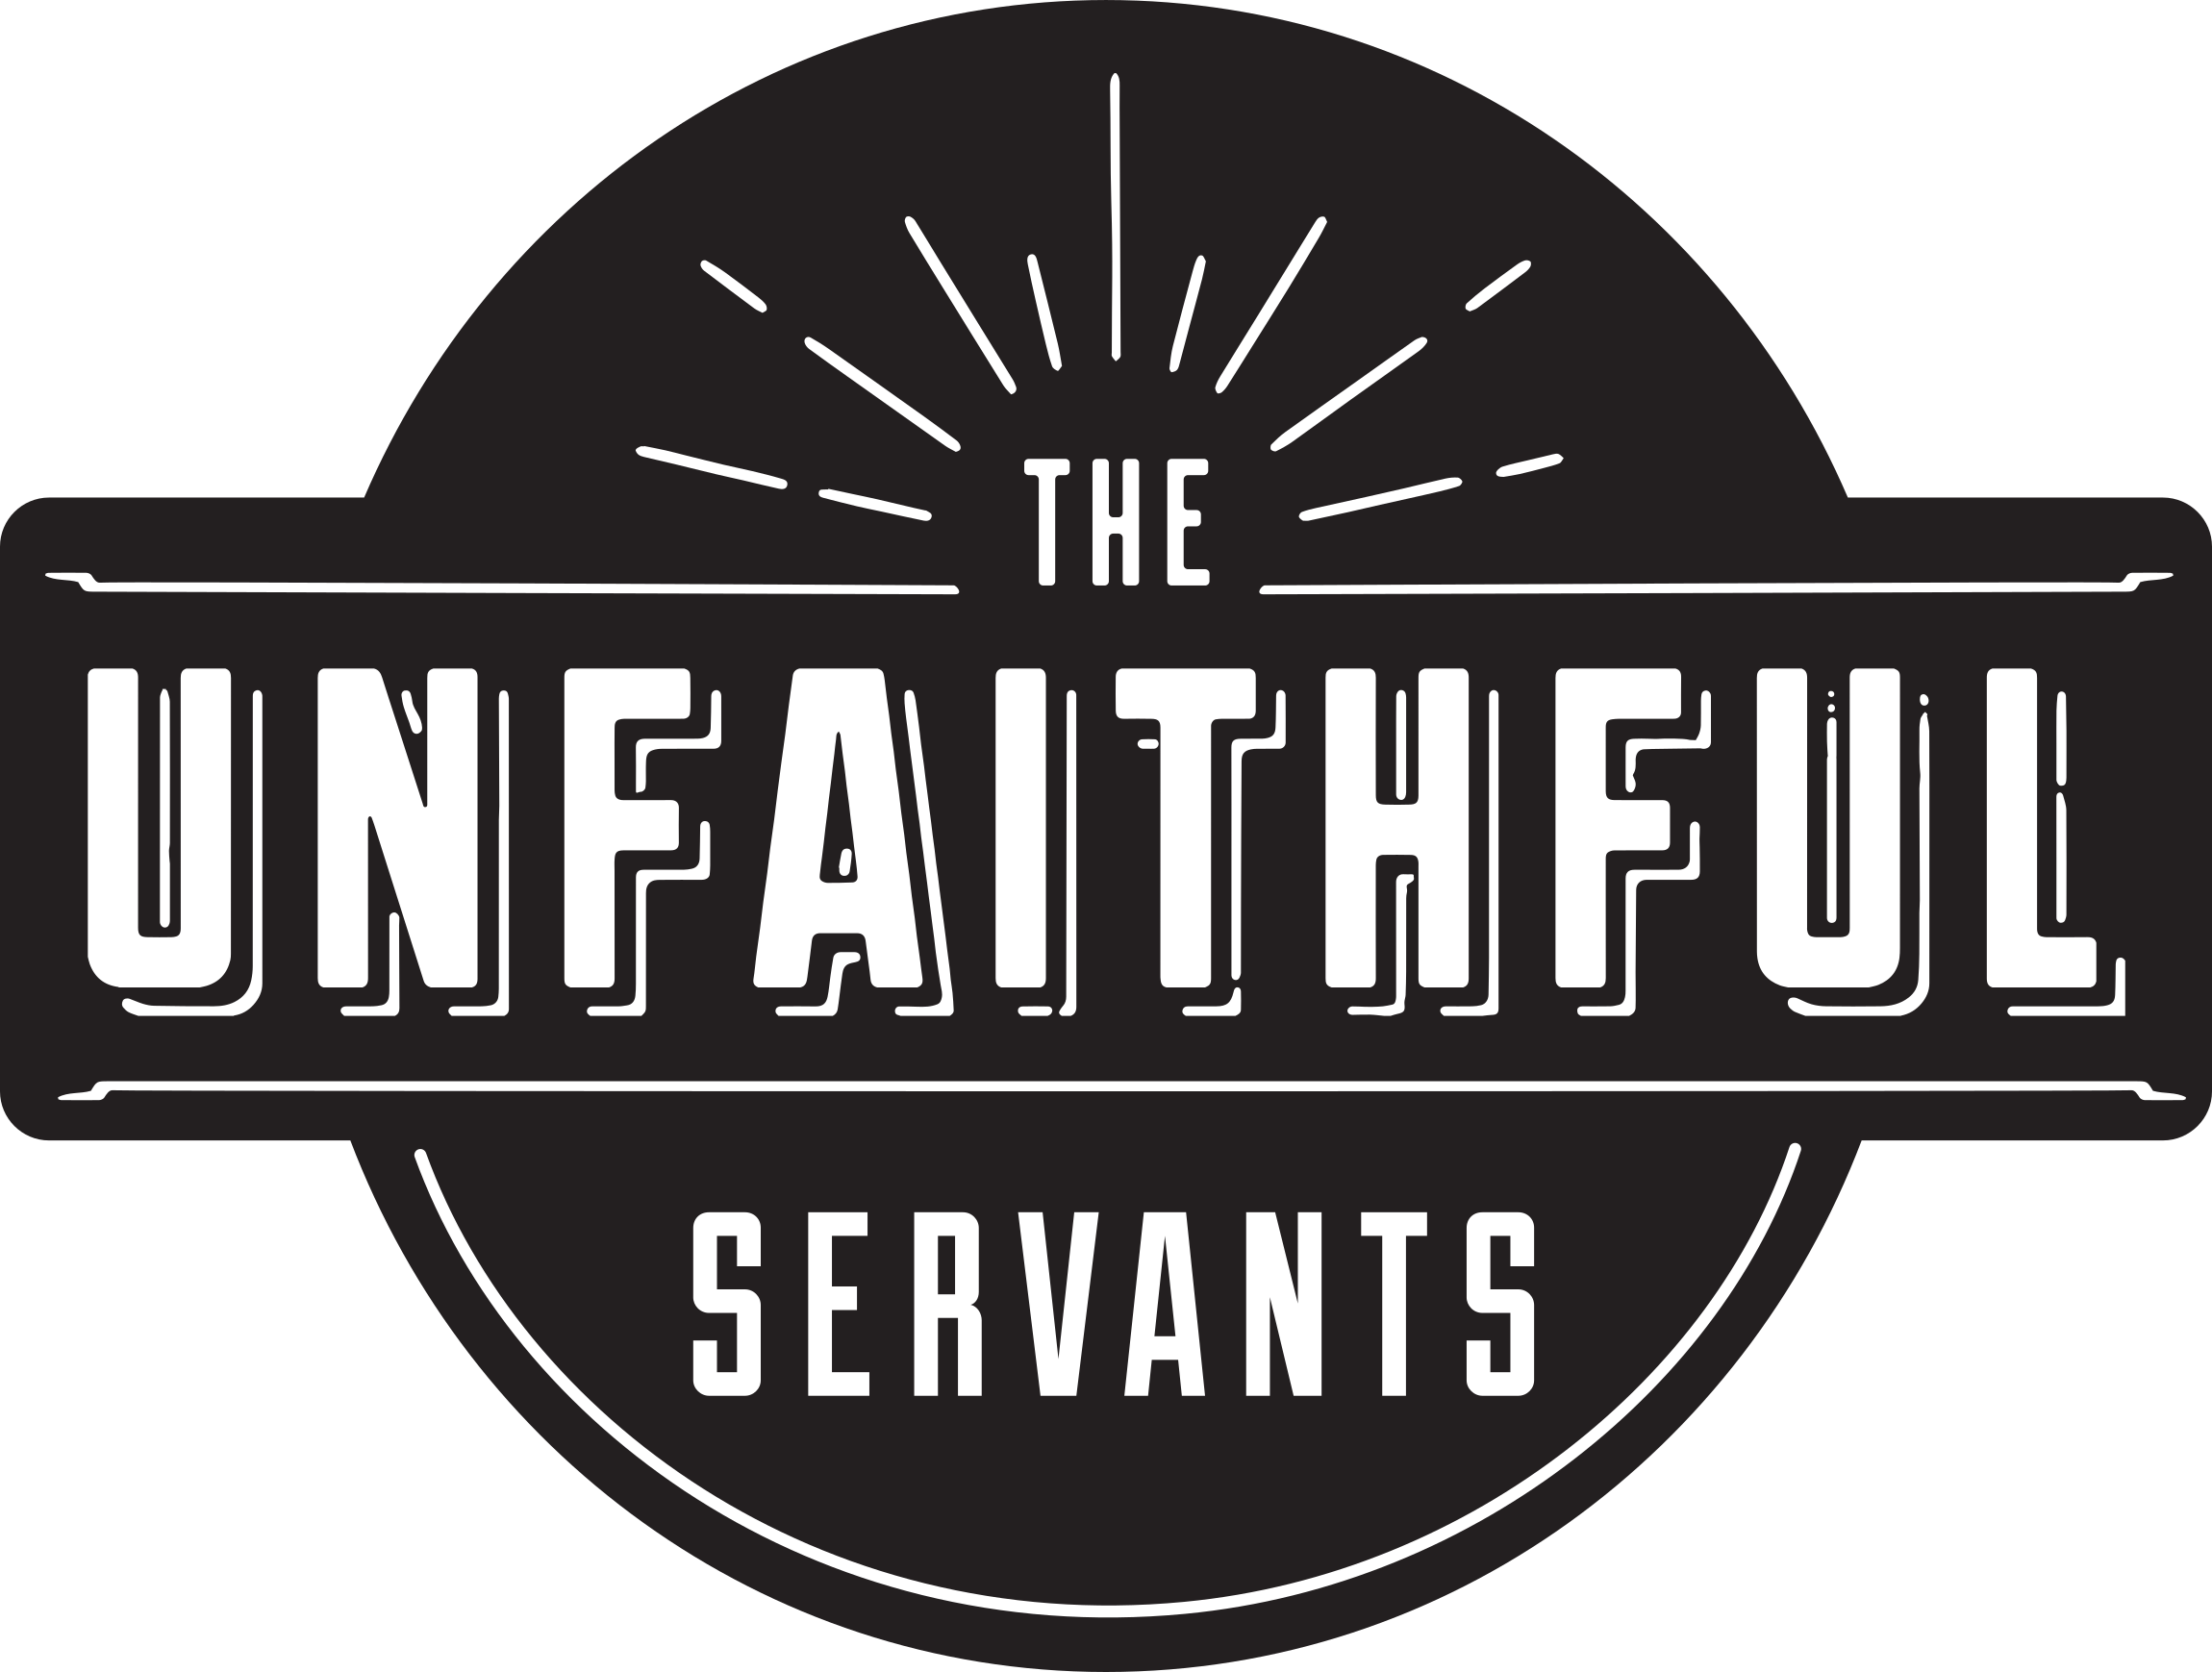 The Unfaithful Servants